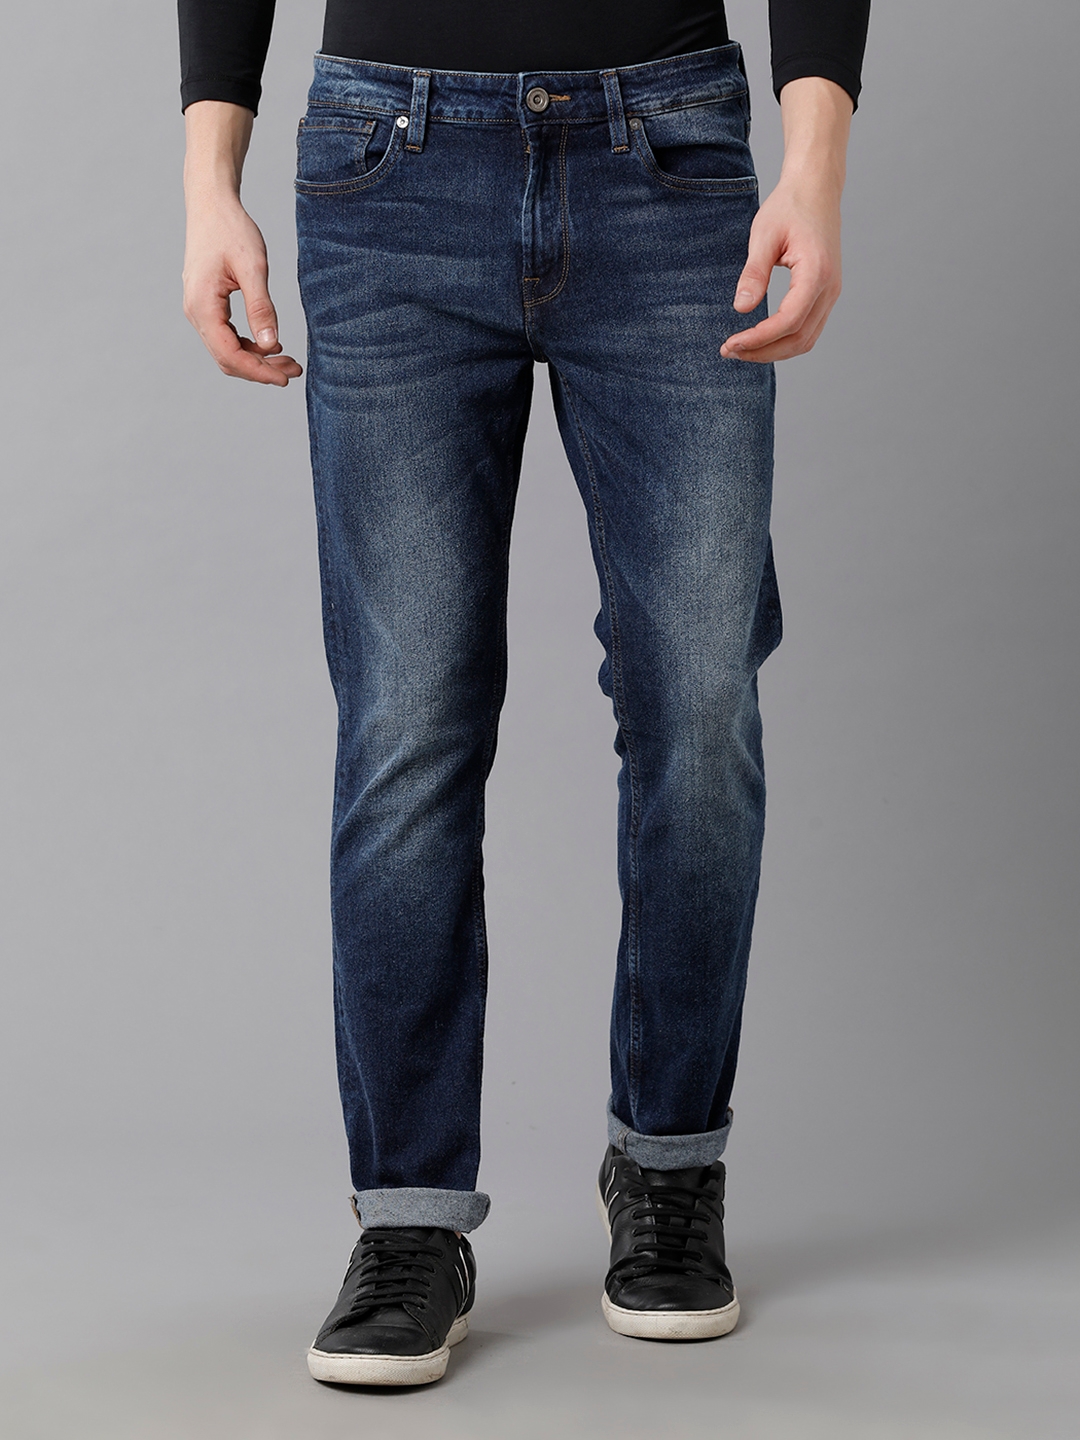 VOI JEANS Men's Solid Indigo Cotton Blend Comfort Fit Mid Rise Jeans